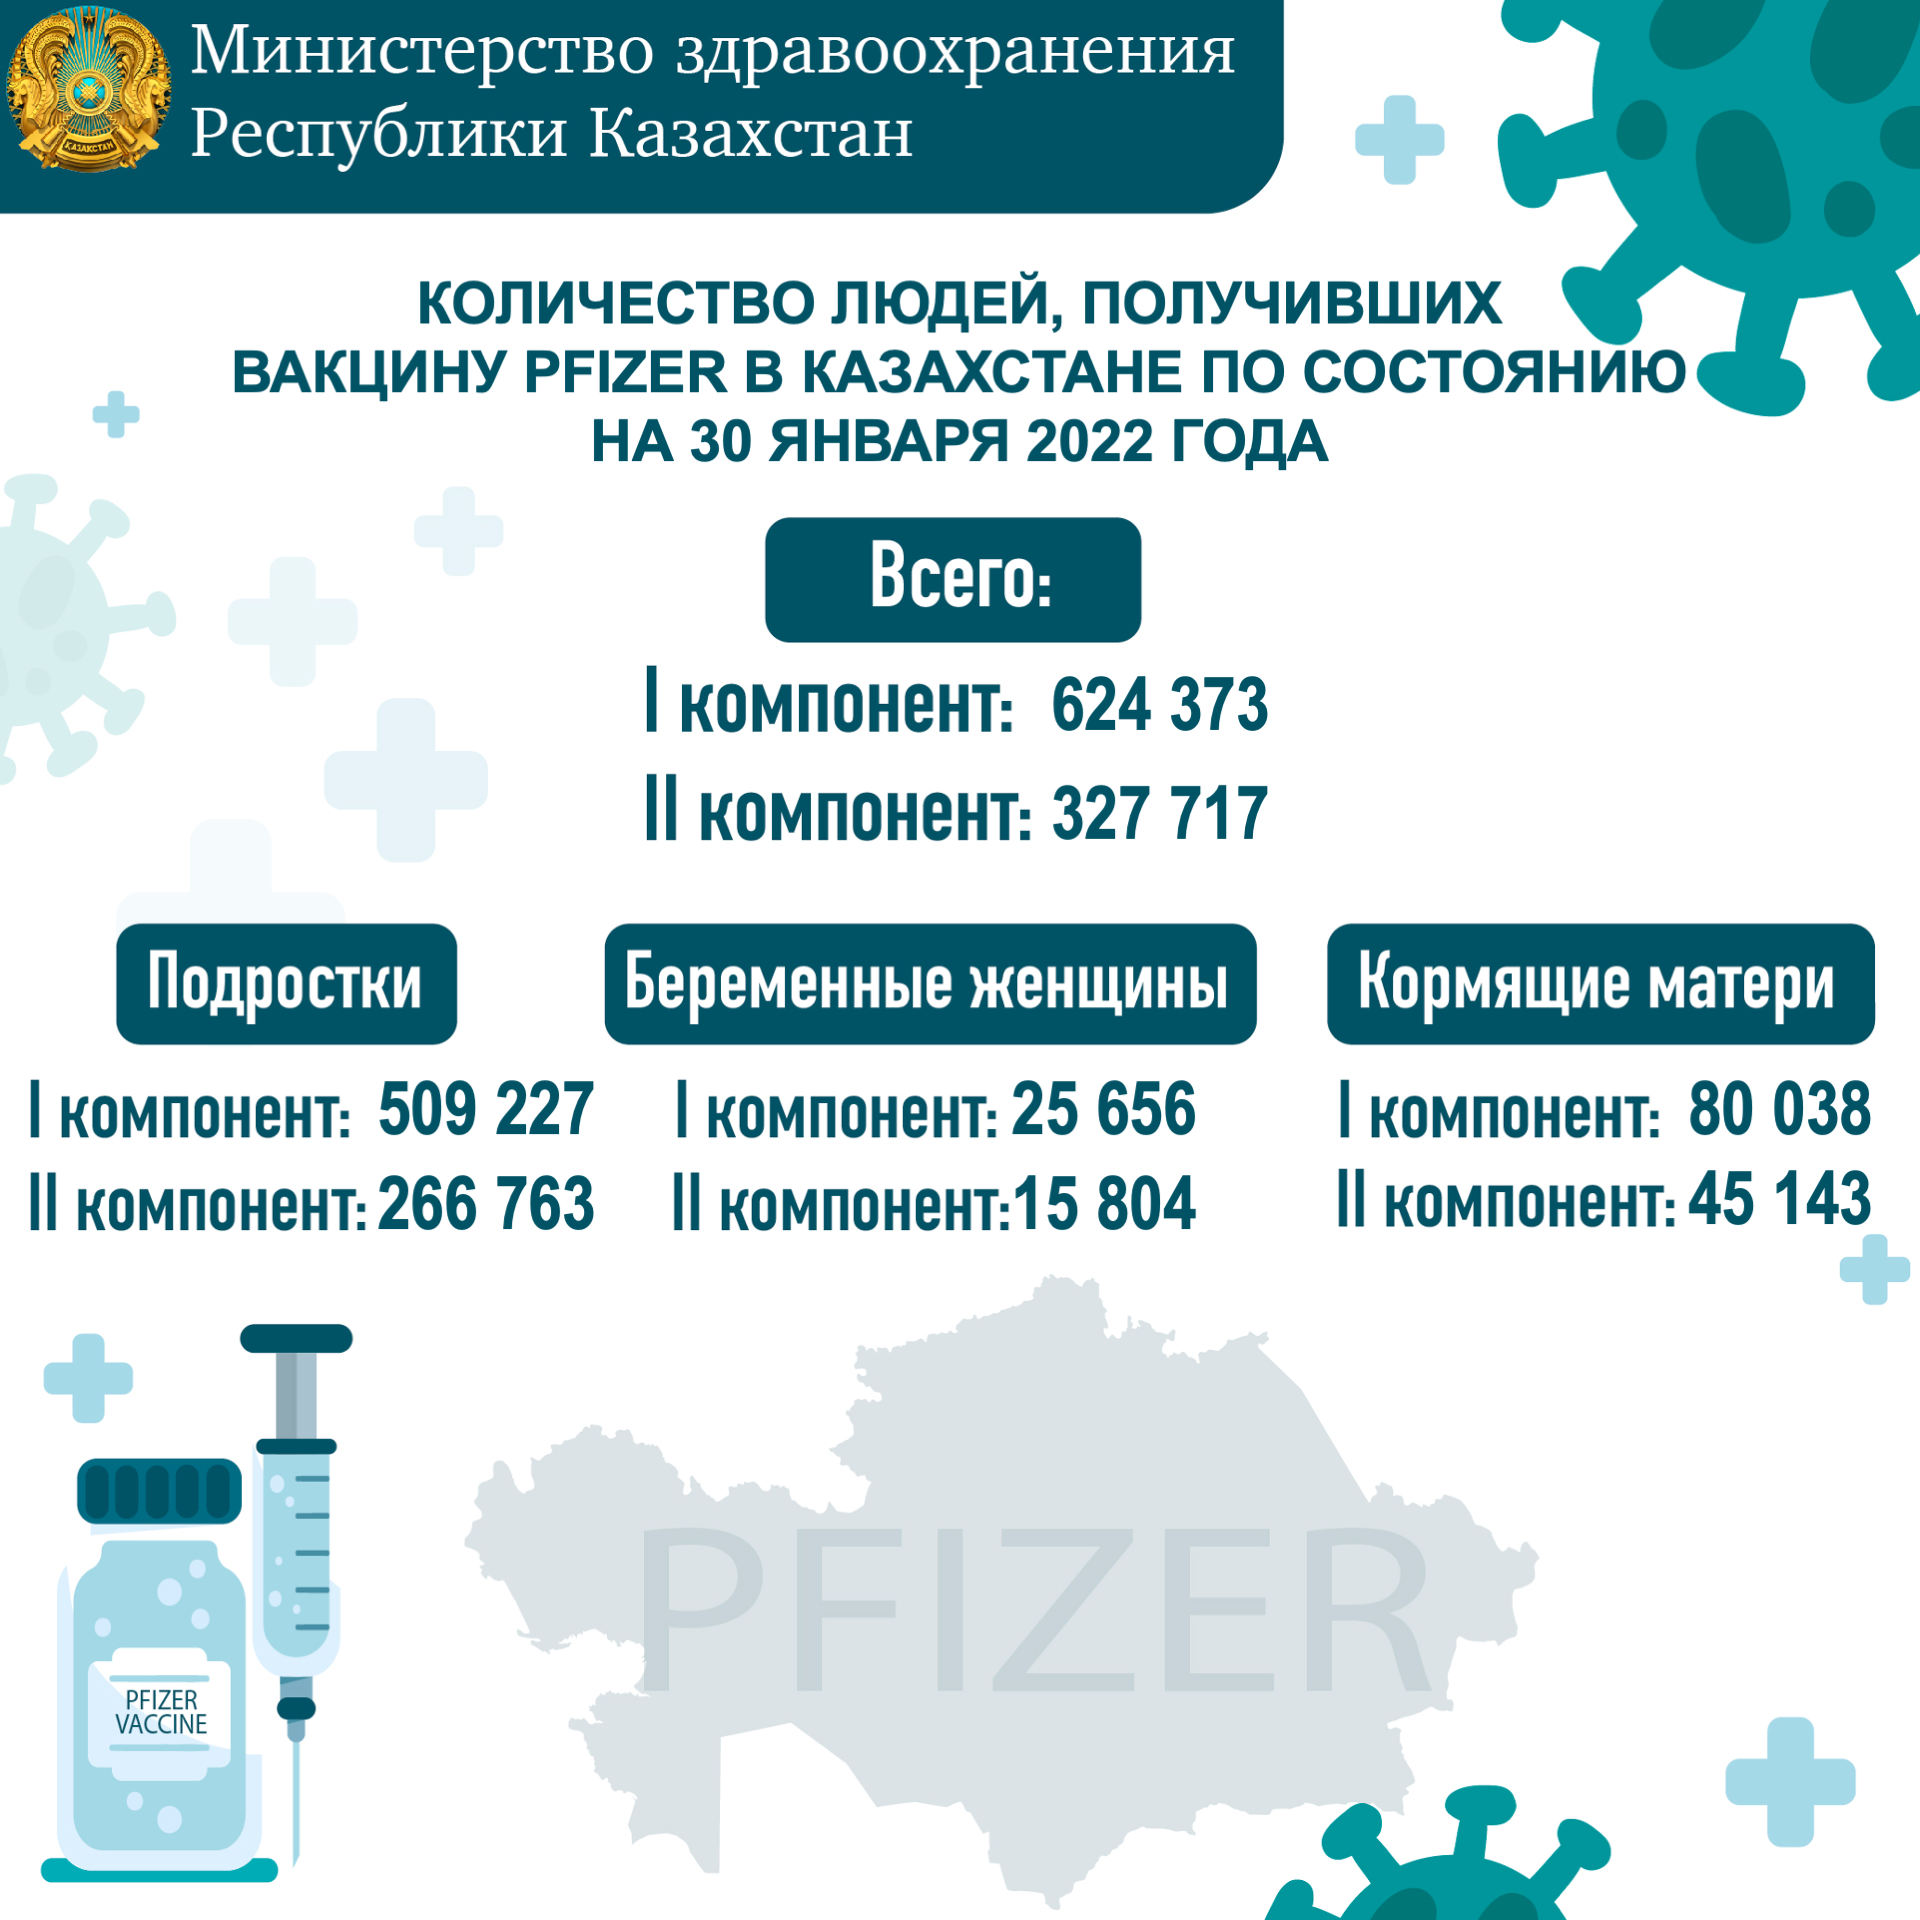 Количество людей, получивших вакцину PFIZER в Казахстане по состоянию на 30 января 2022 года